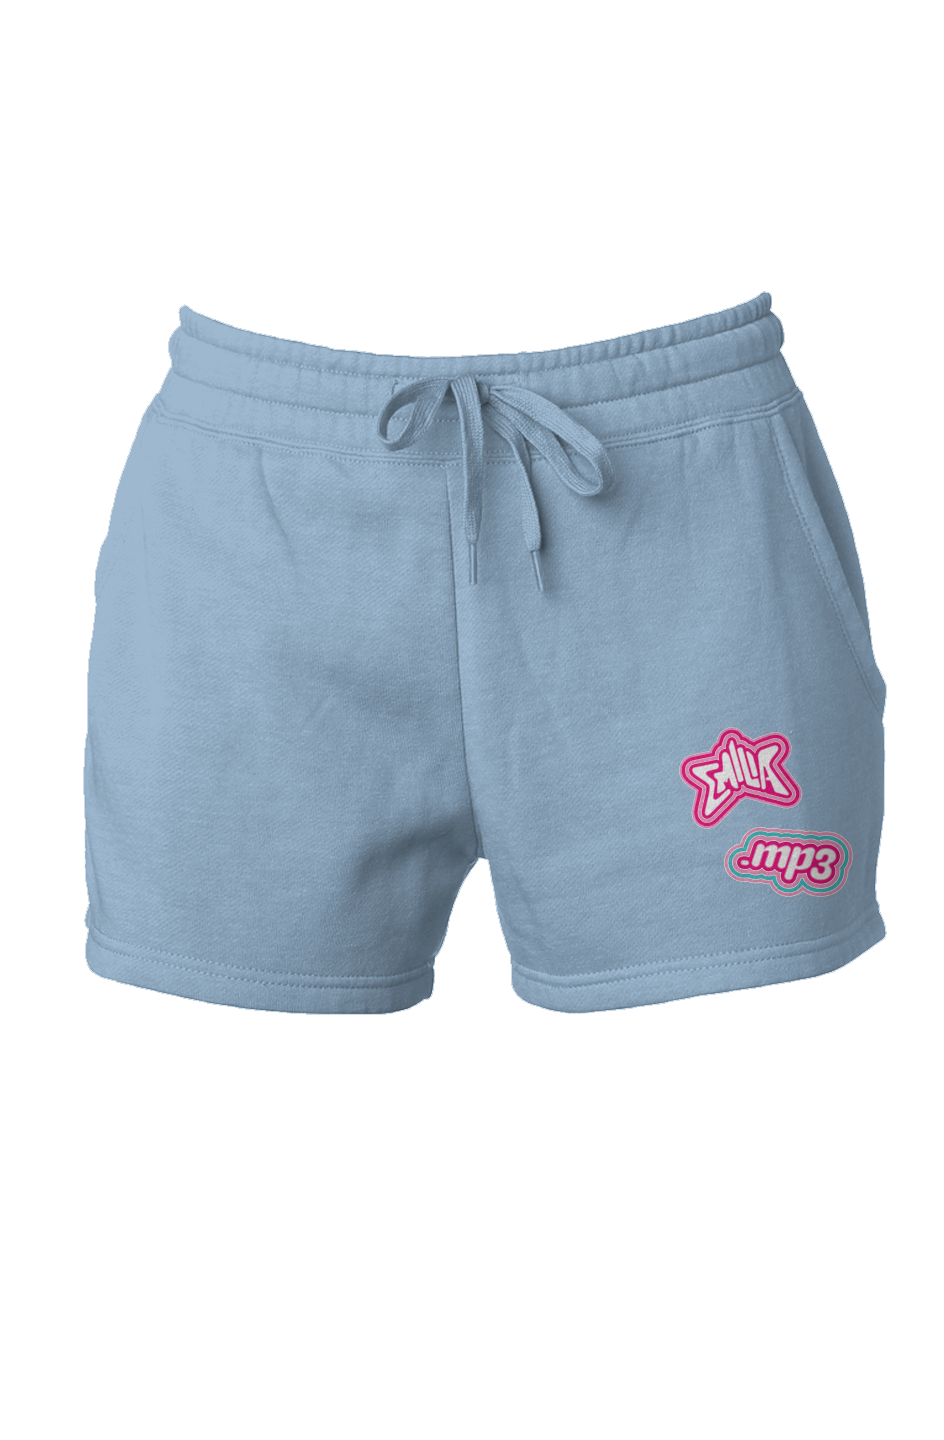 Emilia MP3 Ladies Shorts